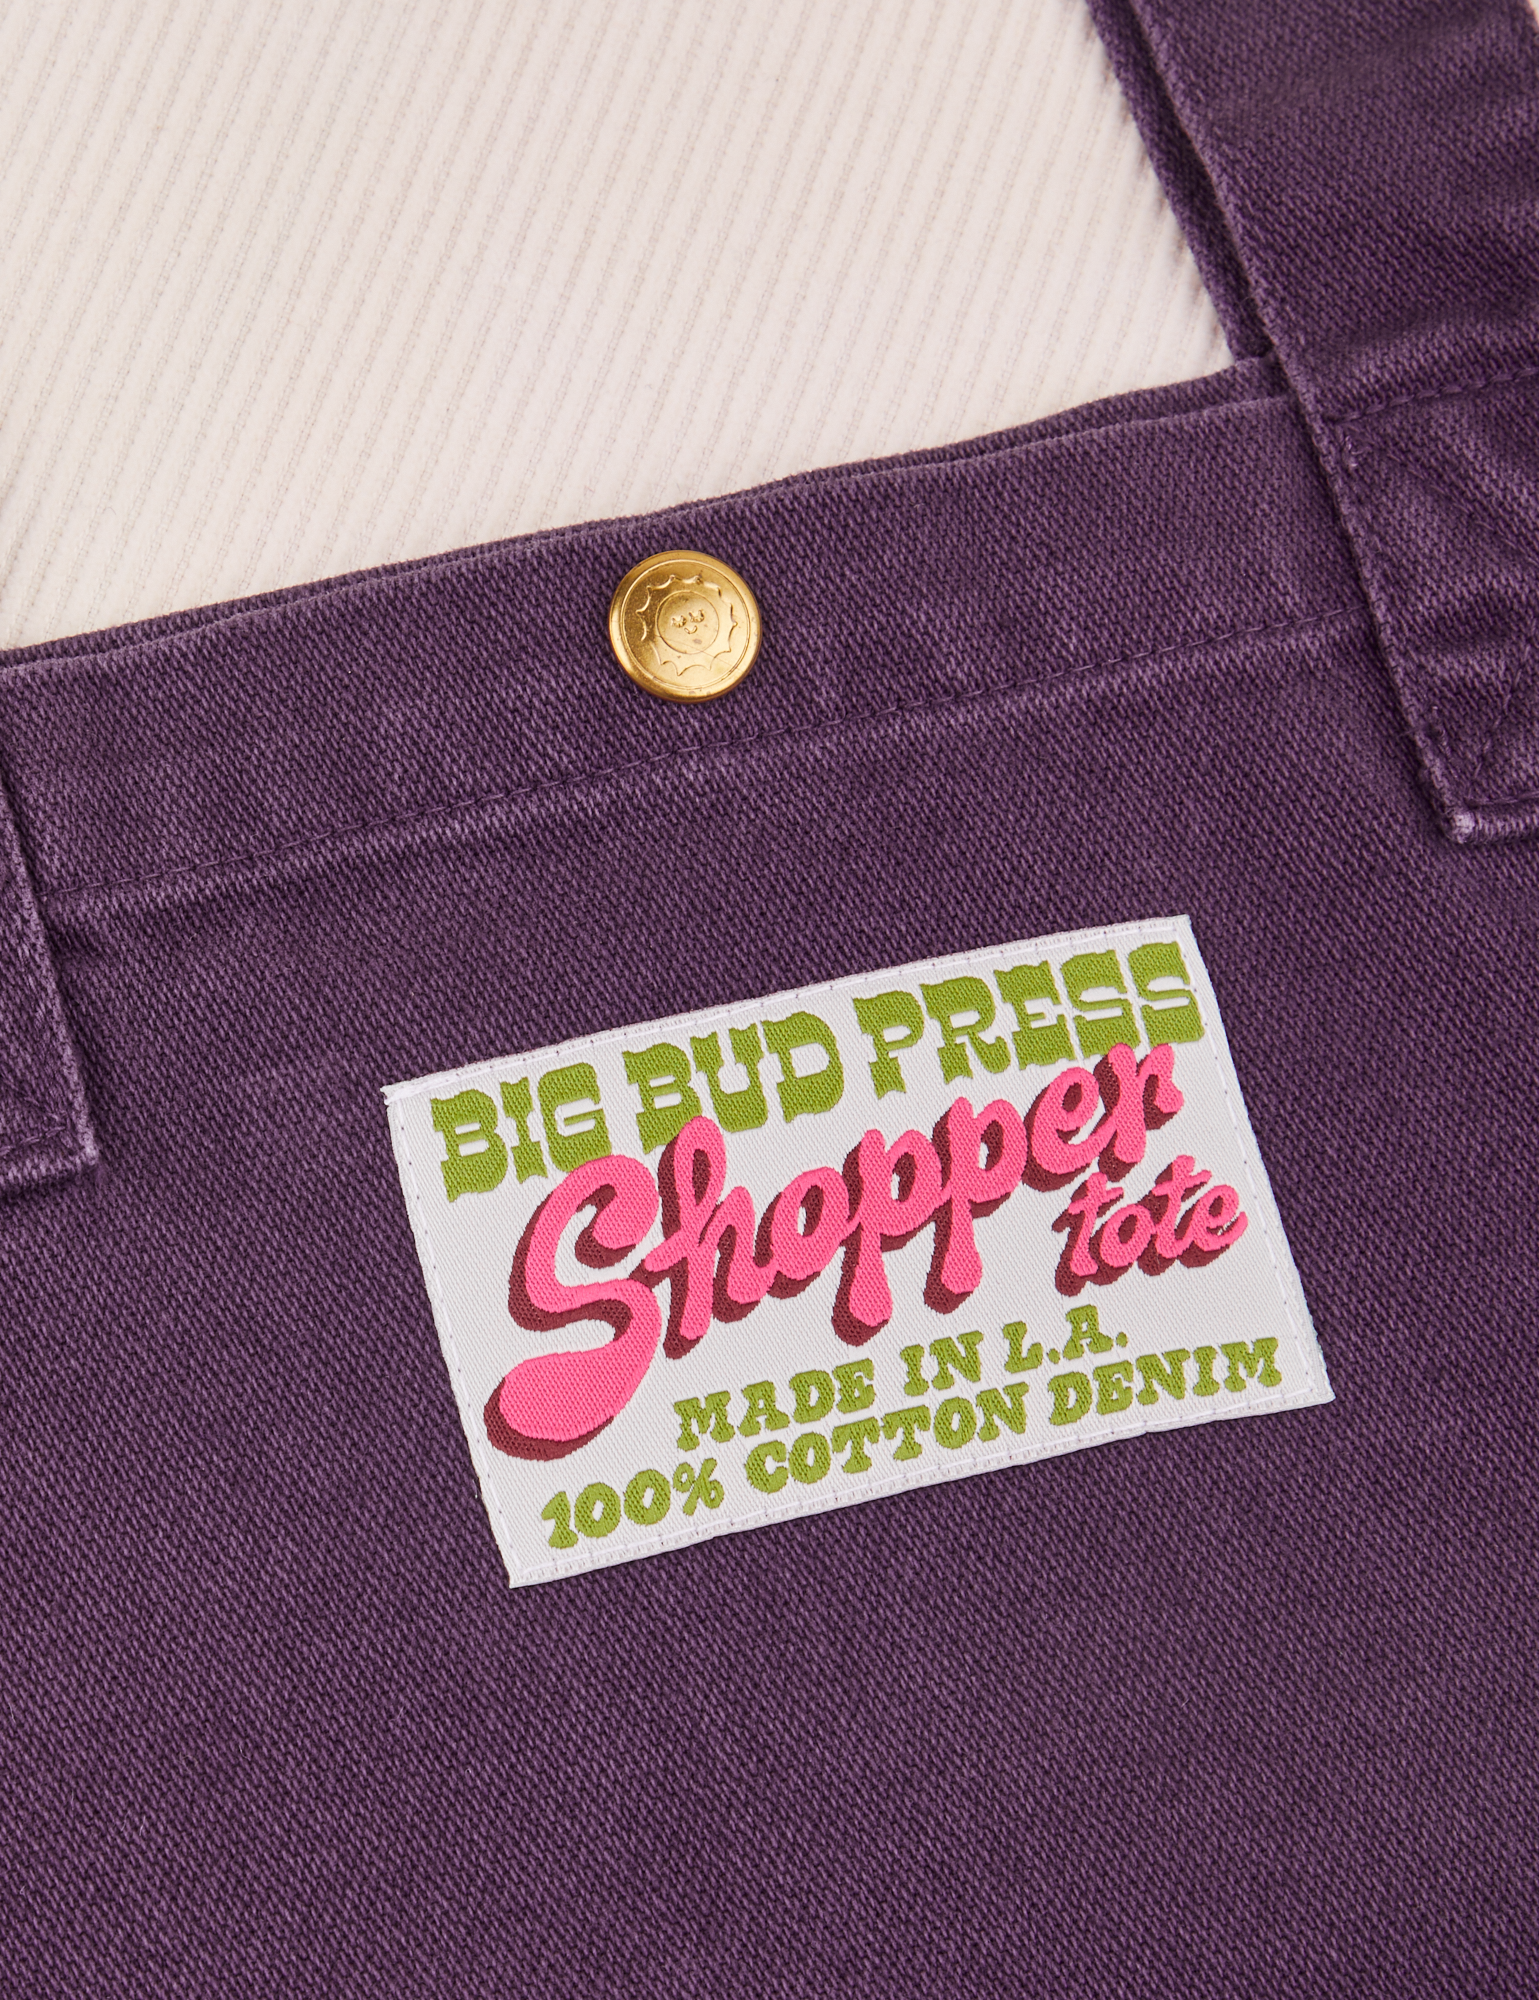 Shopper Tote Bag in Nebula Purple close up